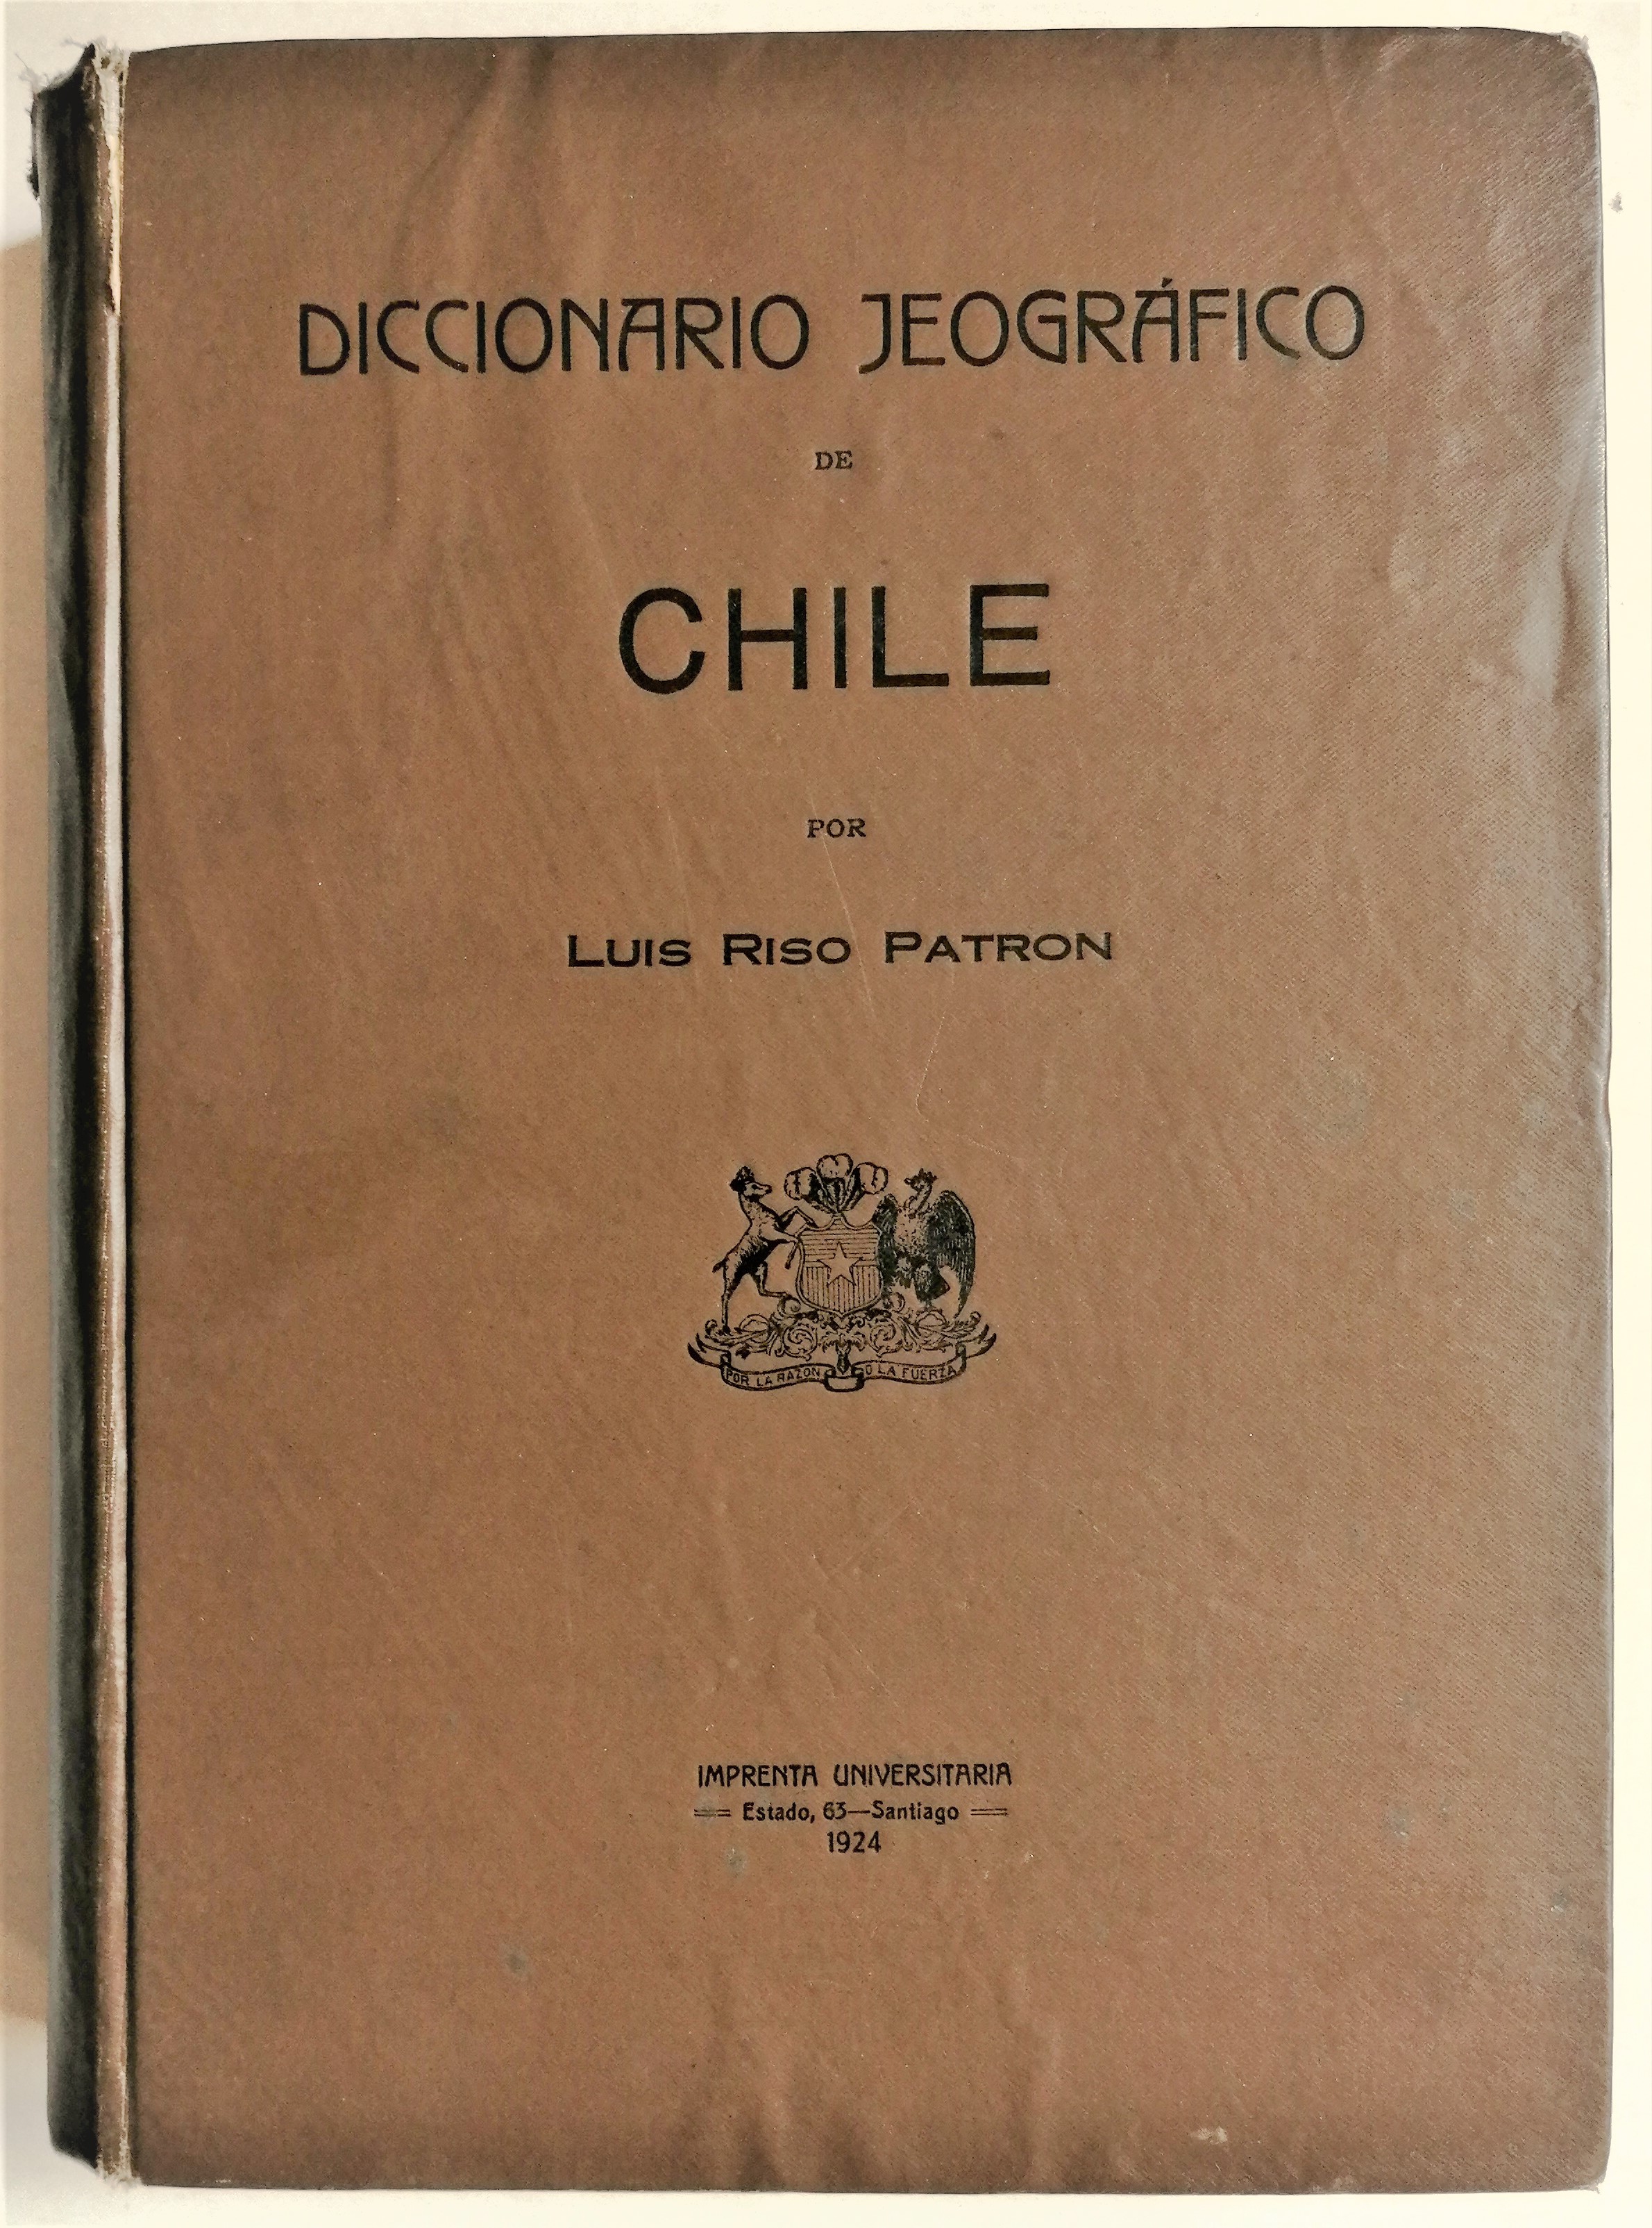 Luis Riso Patrón - Diccionario Jeográfico de Chile